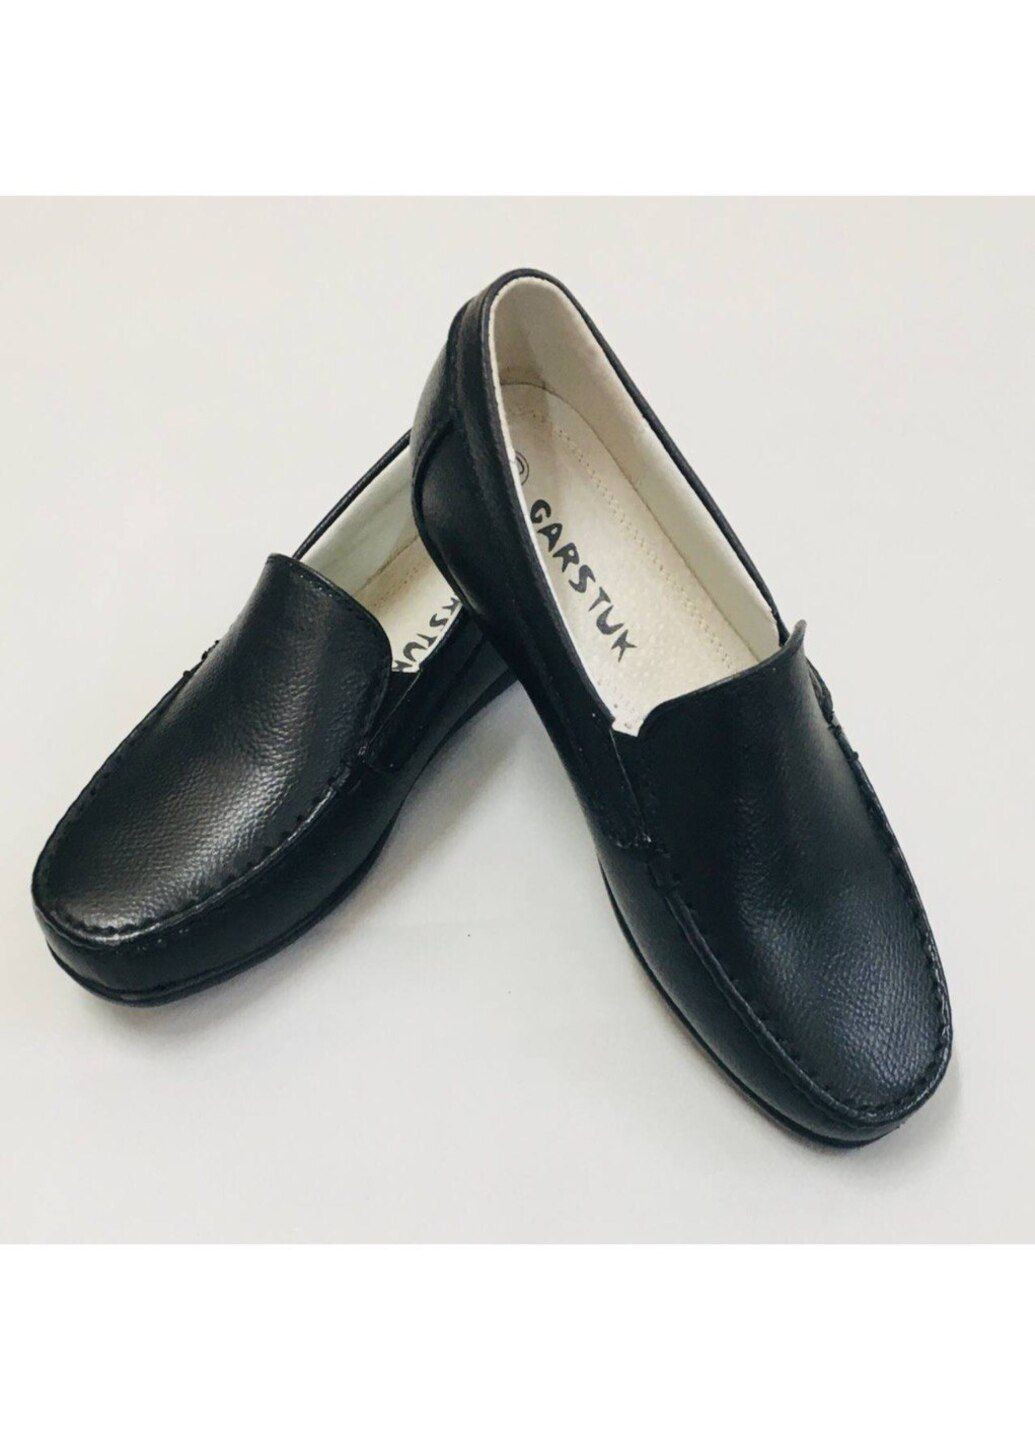 Черные туфли для мальчика lilin b9370-118 36 24 см черный кв0314-3 Garstuk